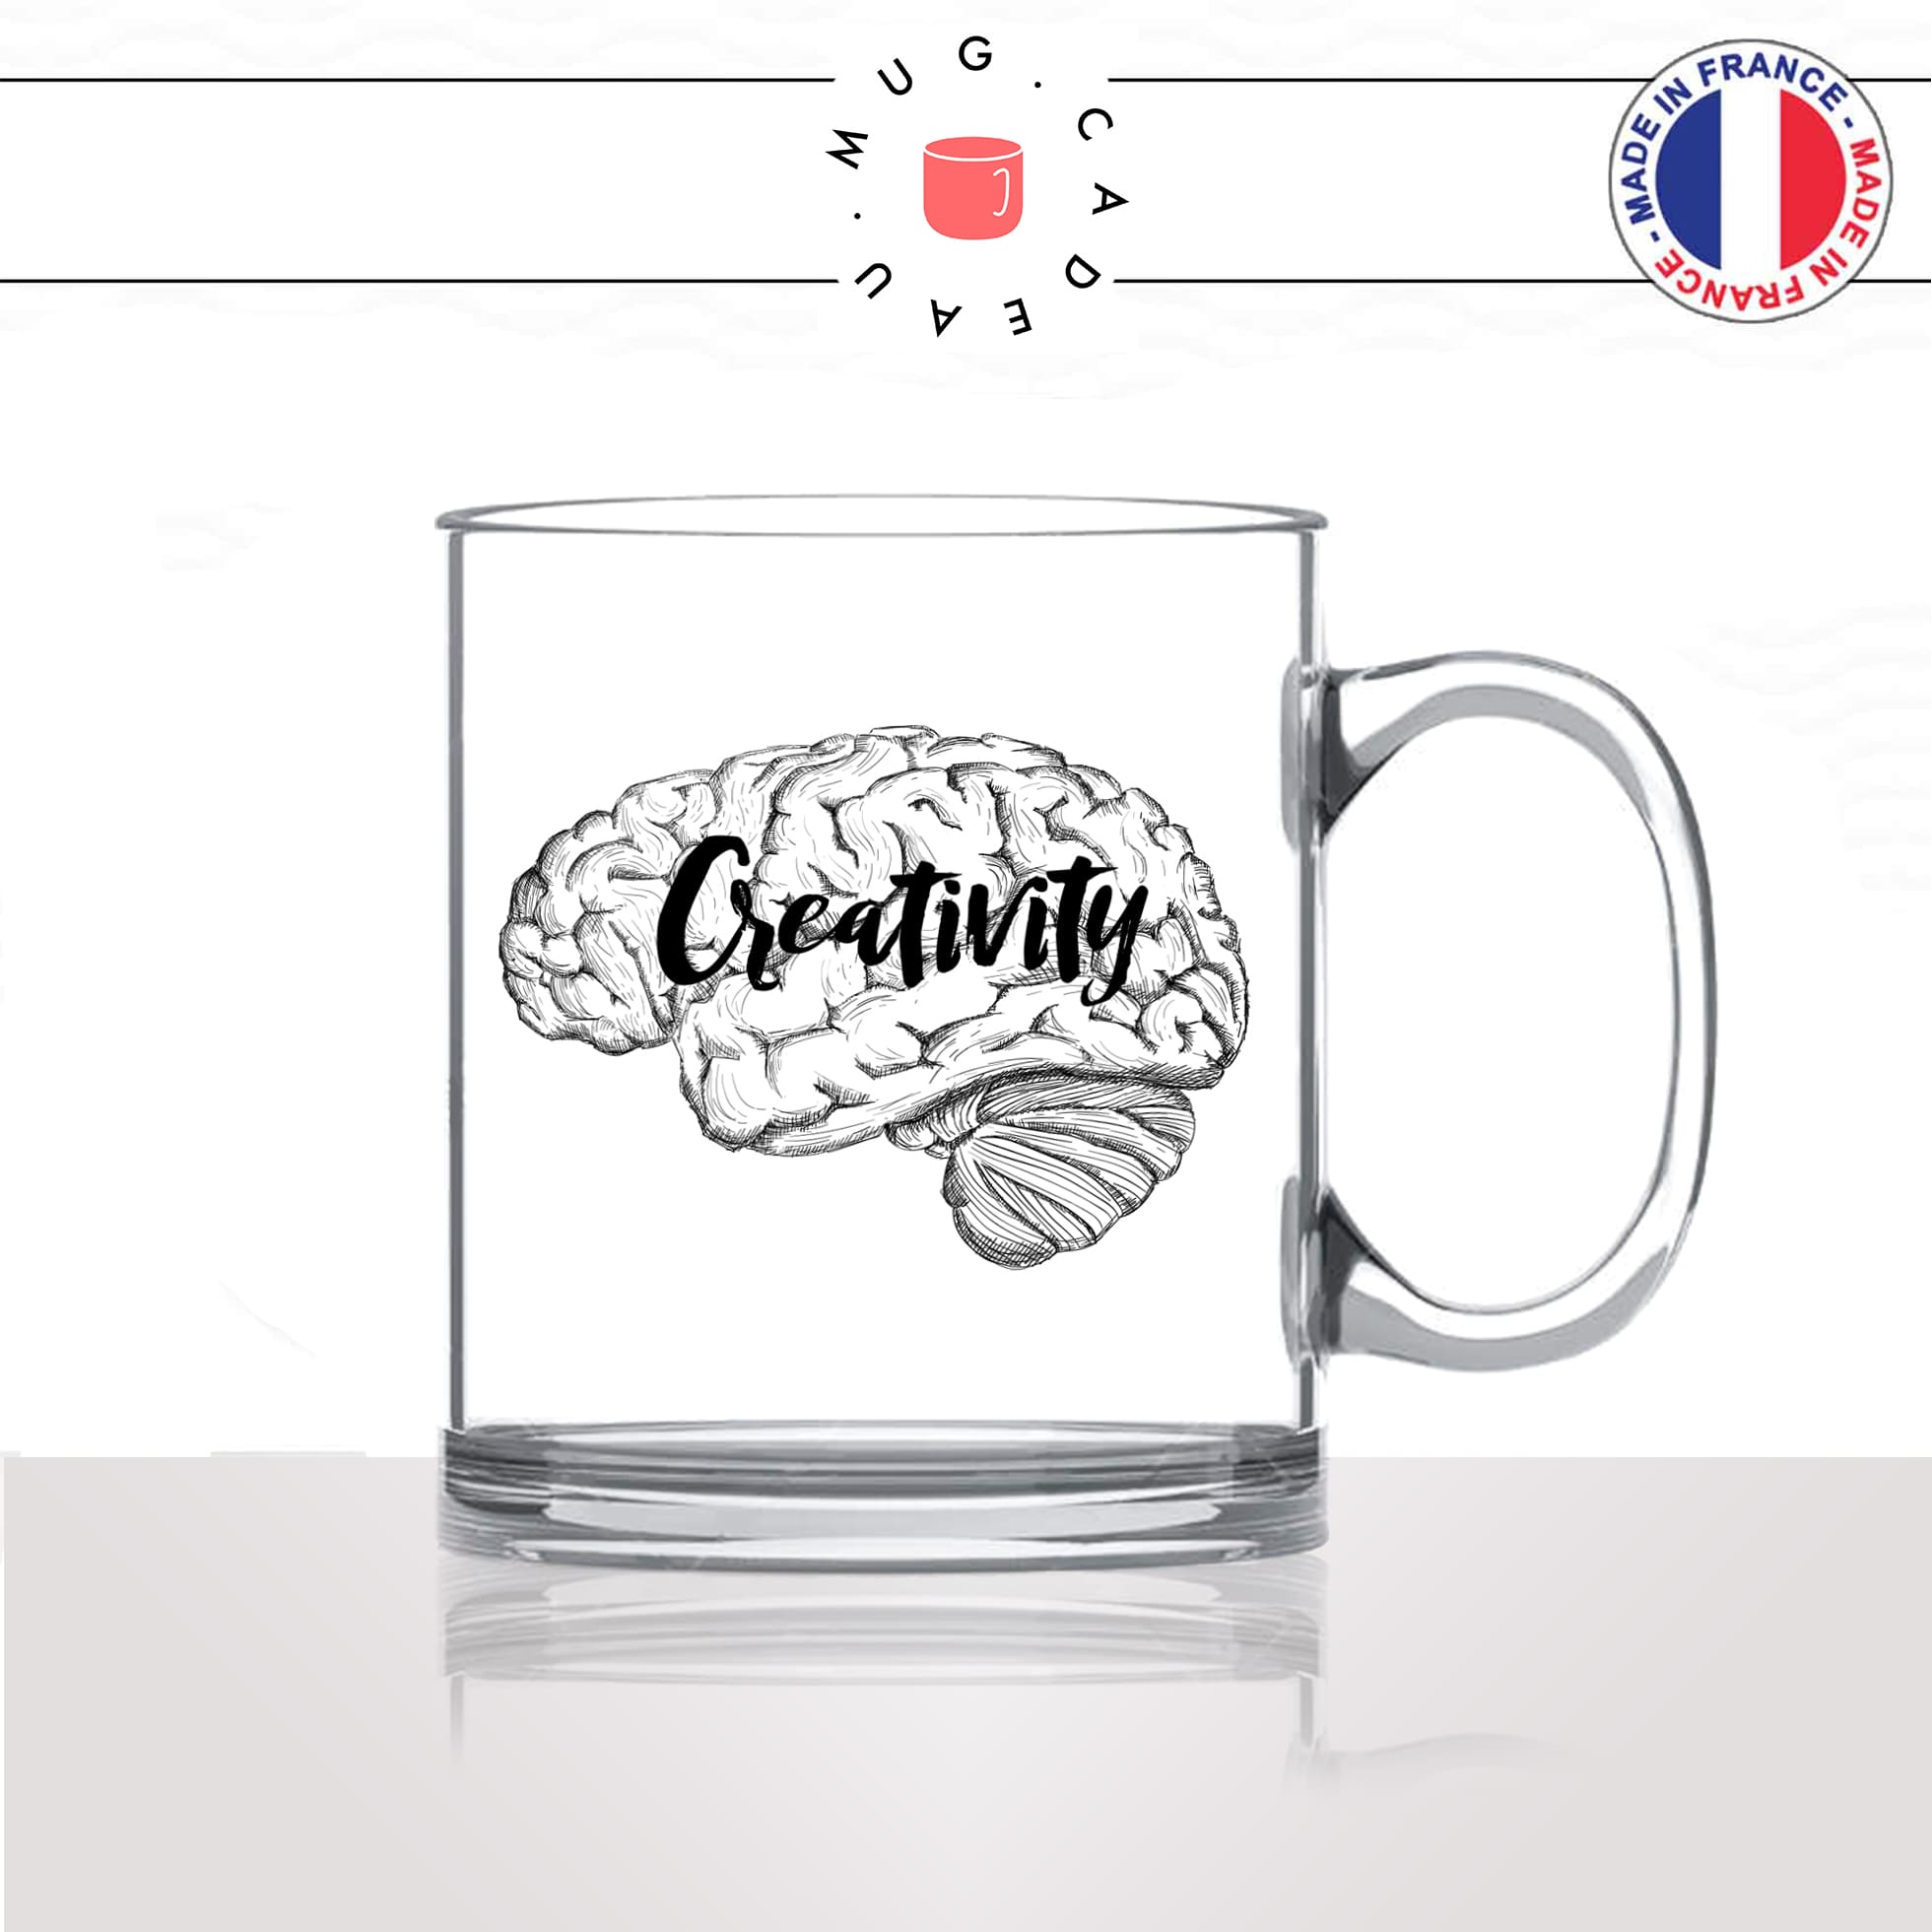 mug-tasse-en-verre-transparent-glass-creativity-creativité-travail-boulot-immagination-idée-cerveau-femme-homme-idée-cadeau-fun-cool-café-thé2